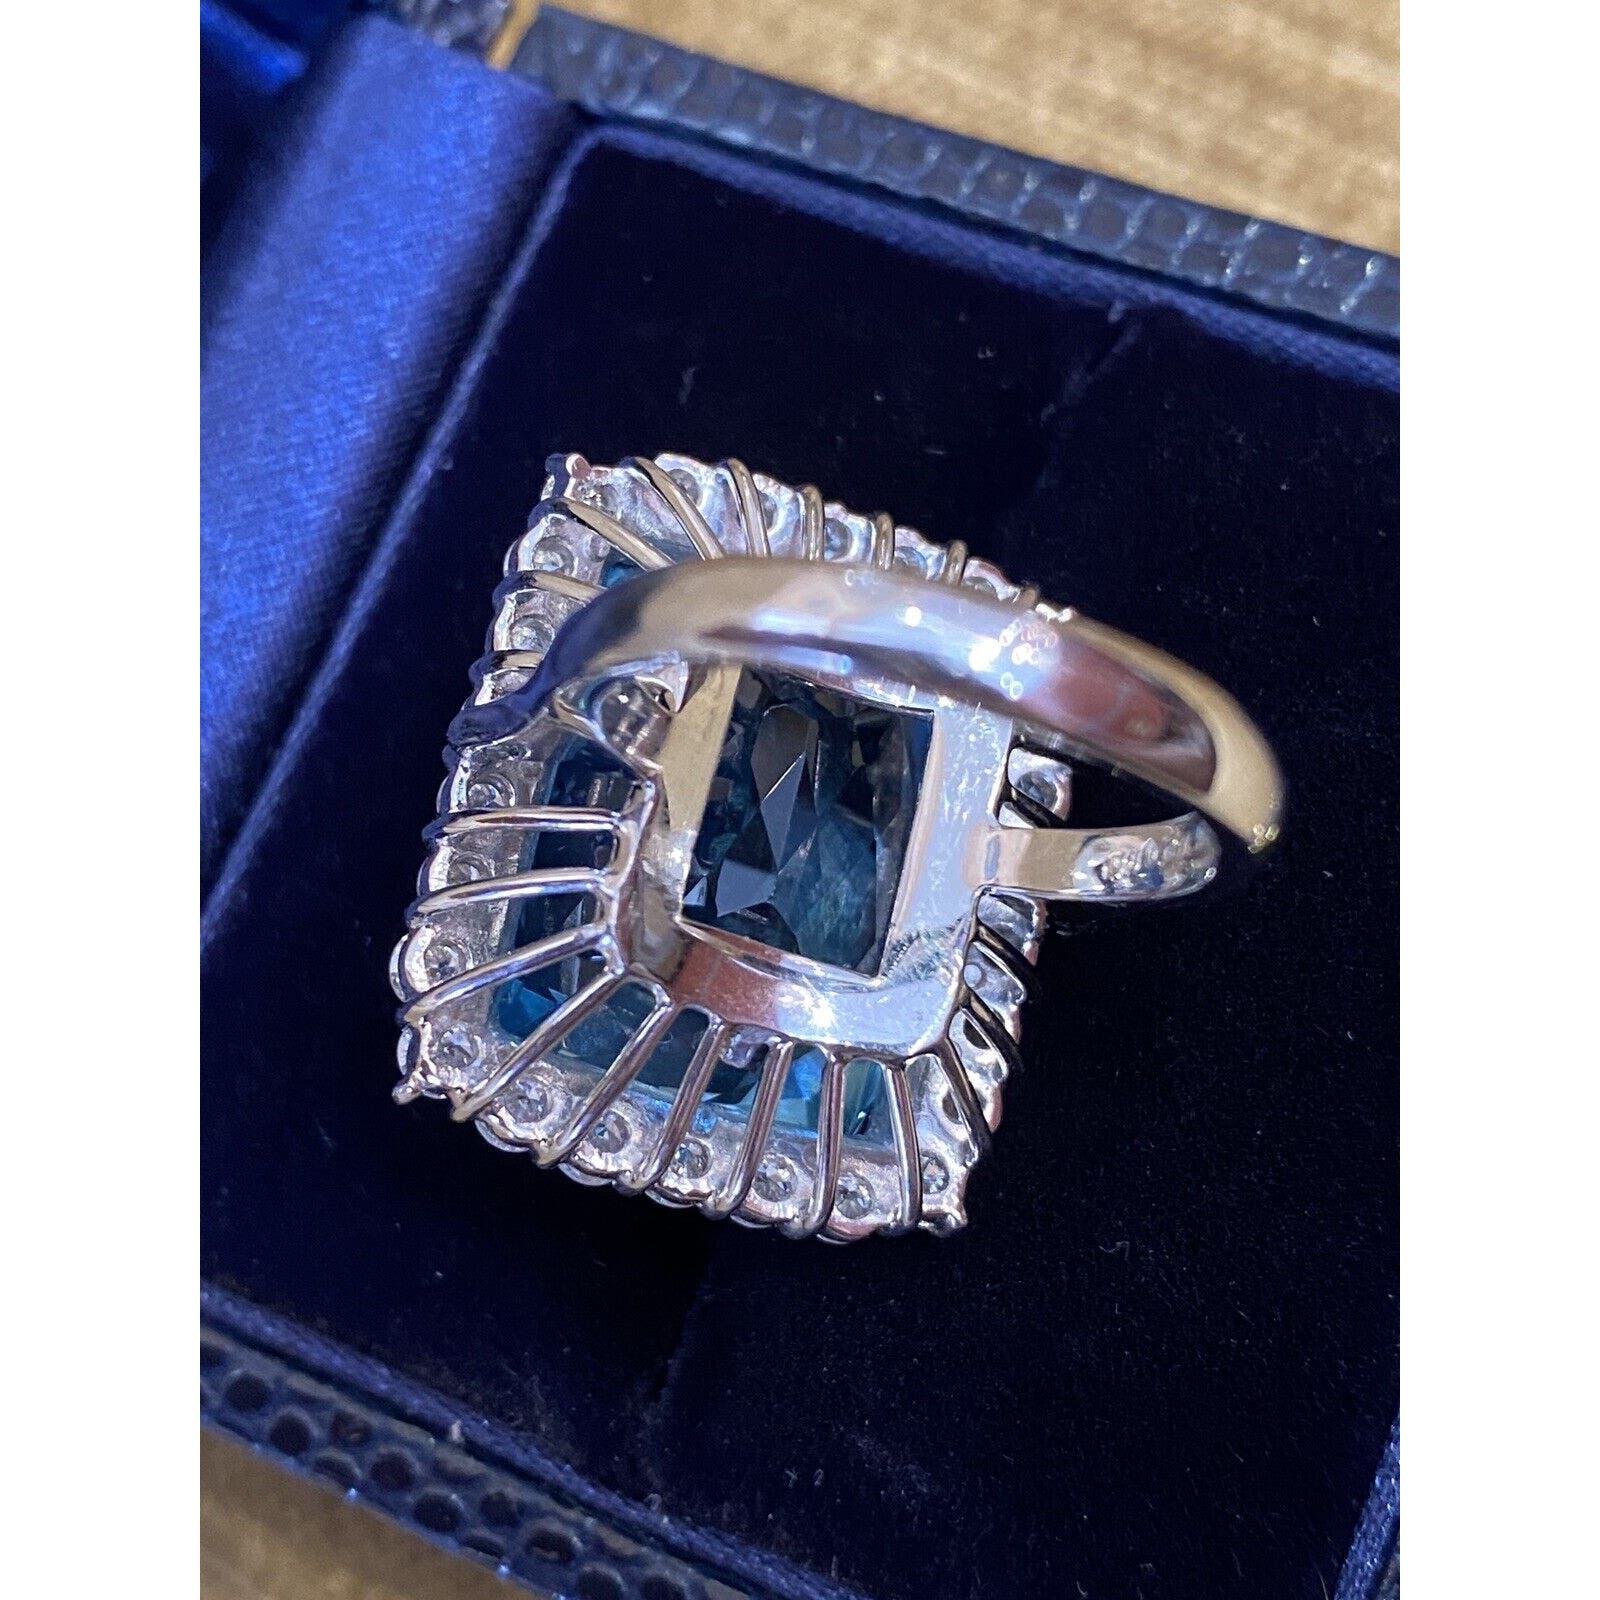 GIA 25.47 ct Aquamarine and Diamond Ring in Platinum - HM2371RN